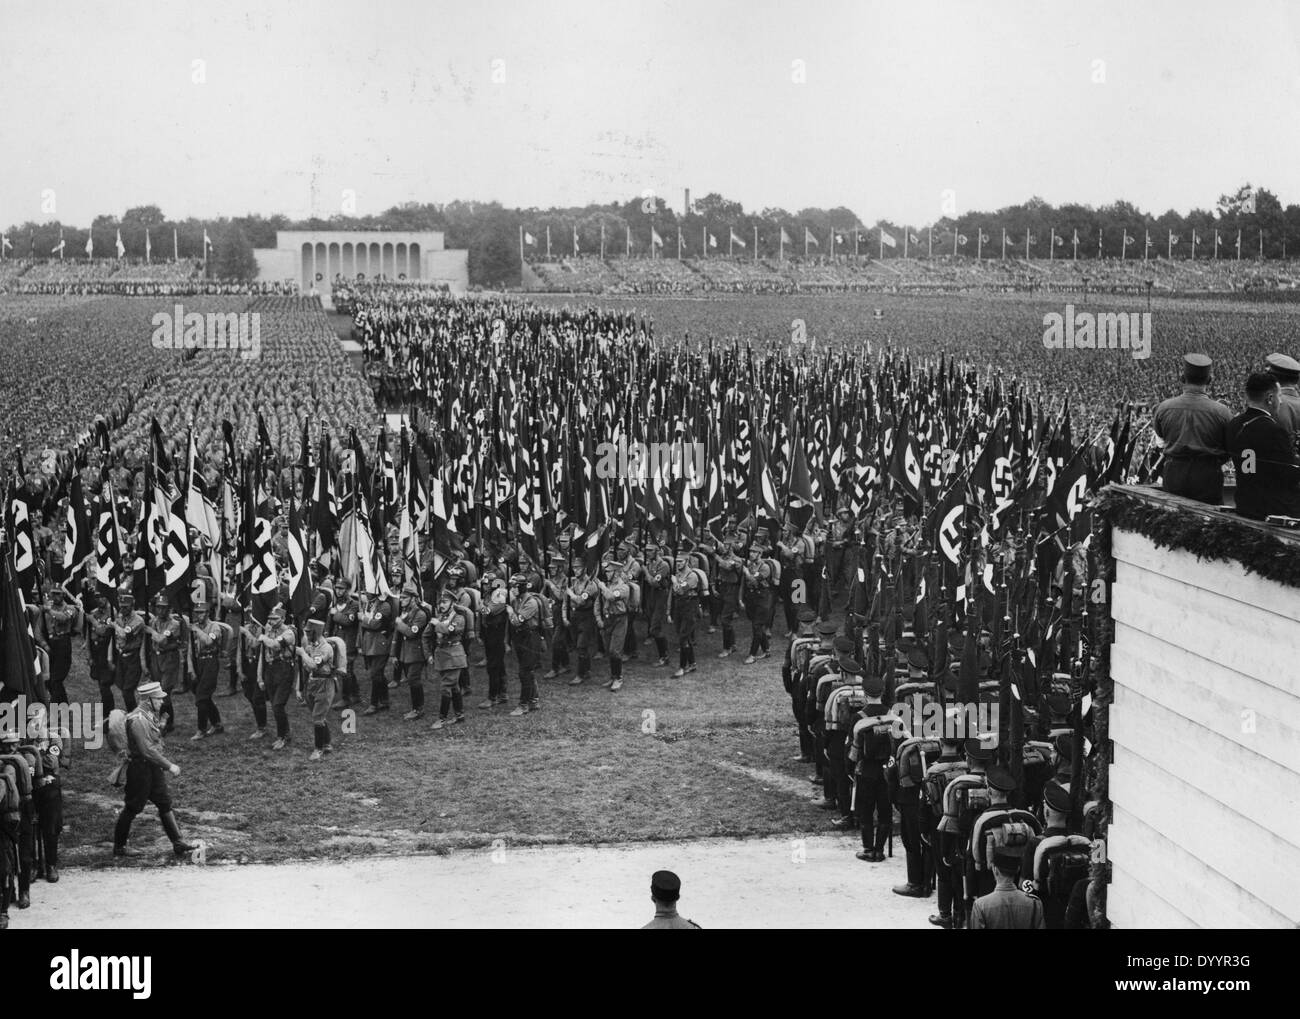 Parade sur le terrain au cours de l'Zeppelin NSDAP ralley, 1933 Banque D'Images